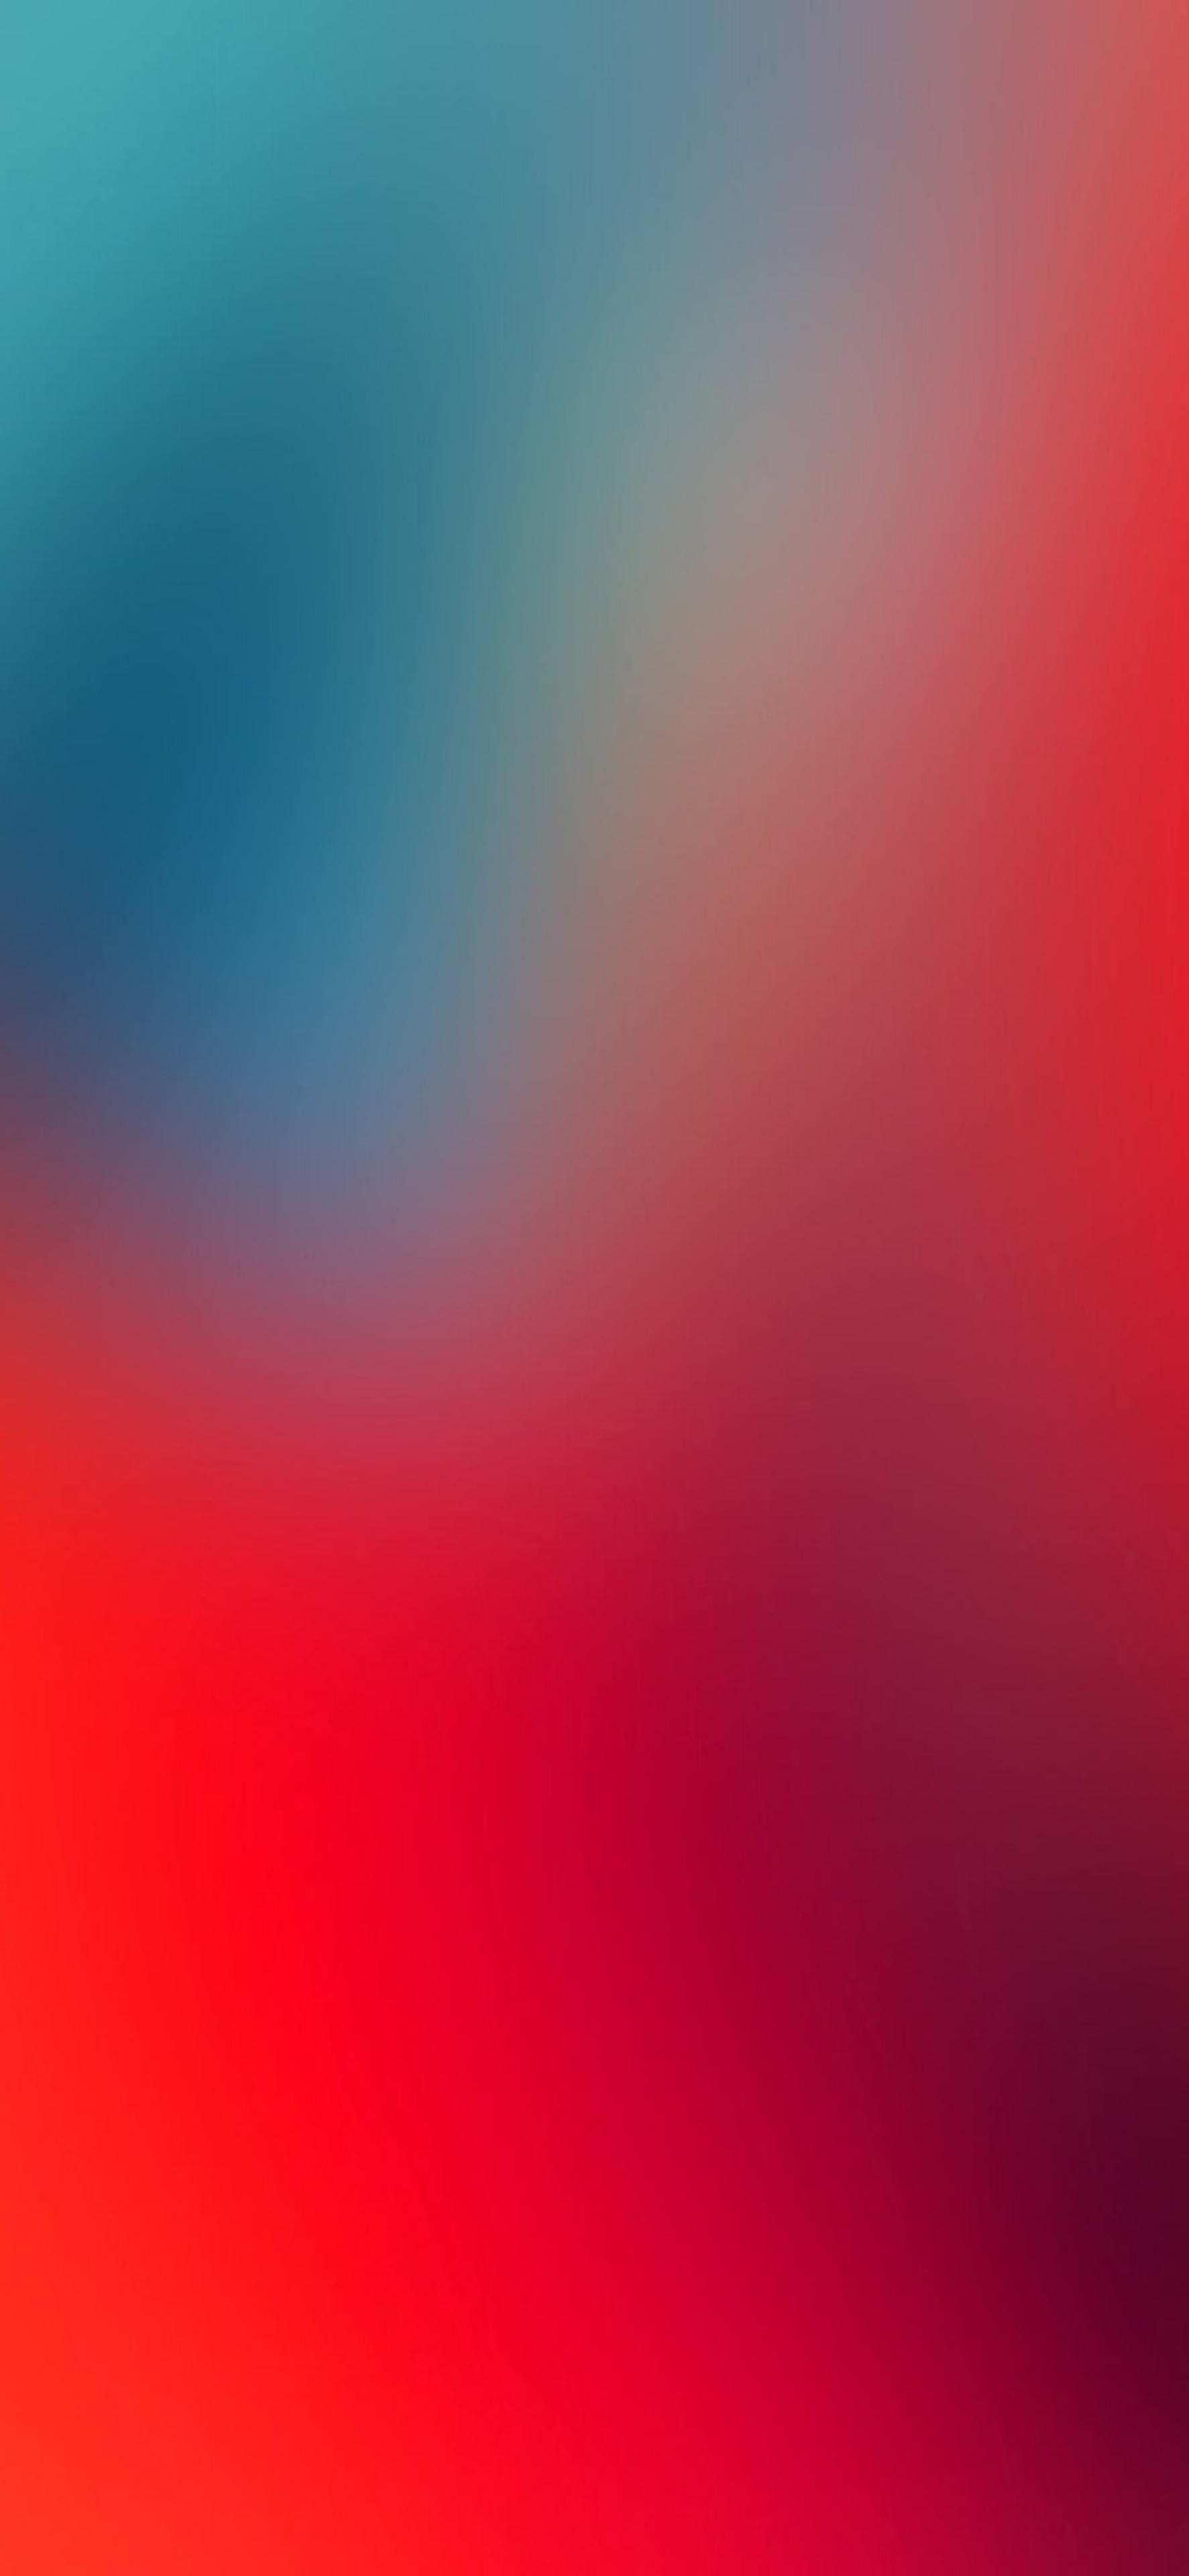 Để đổi gió cho chiếc iPhone 12 của mình, tại sao không thử tải ngay một bộ hình nền 4k đẹp lung linh từ PixelsTalk.Net? Với đảm bảo chất lượng và độ sắc nét của hình ảnh, bạn sẽ được trải nghiệm một không gian màn hình hoàn toàn mới.